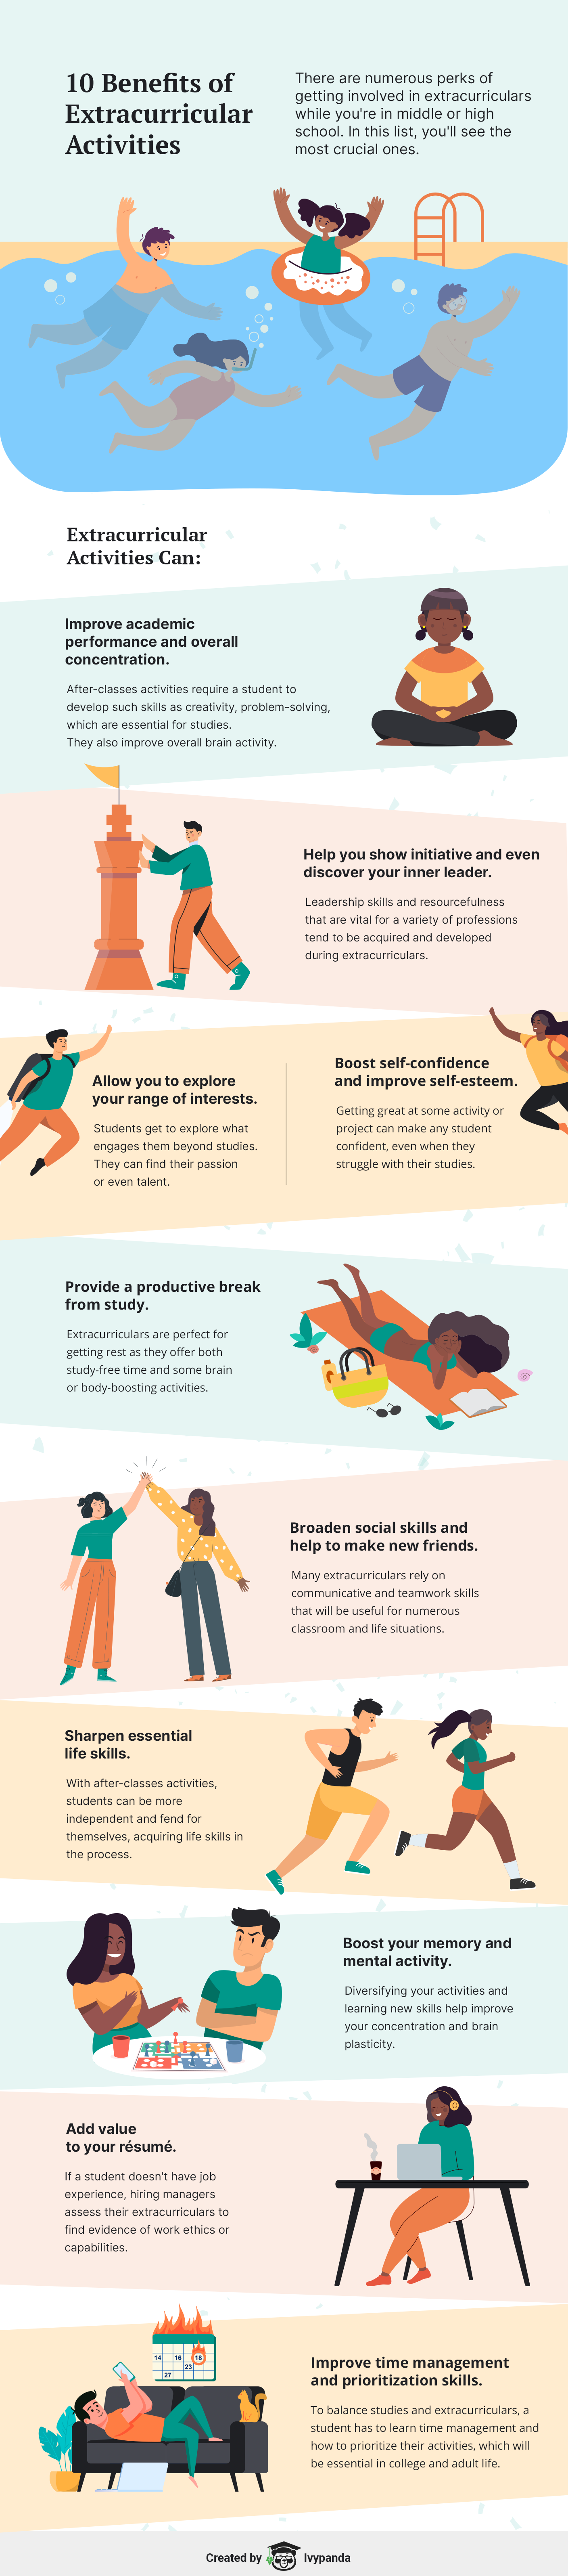 10 Benefits of Extracurricular Activities.